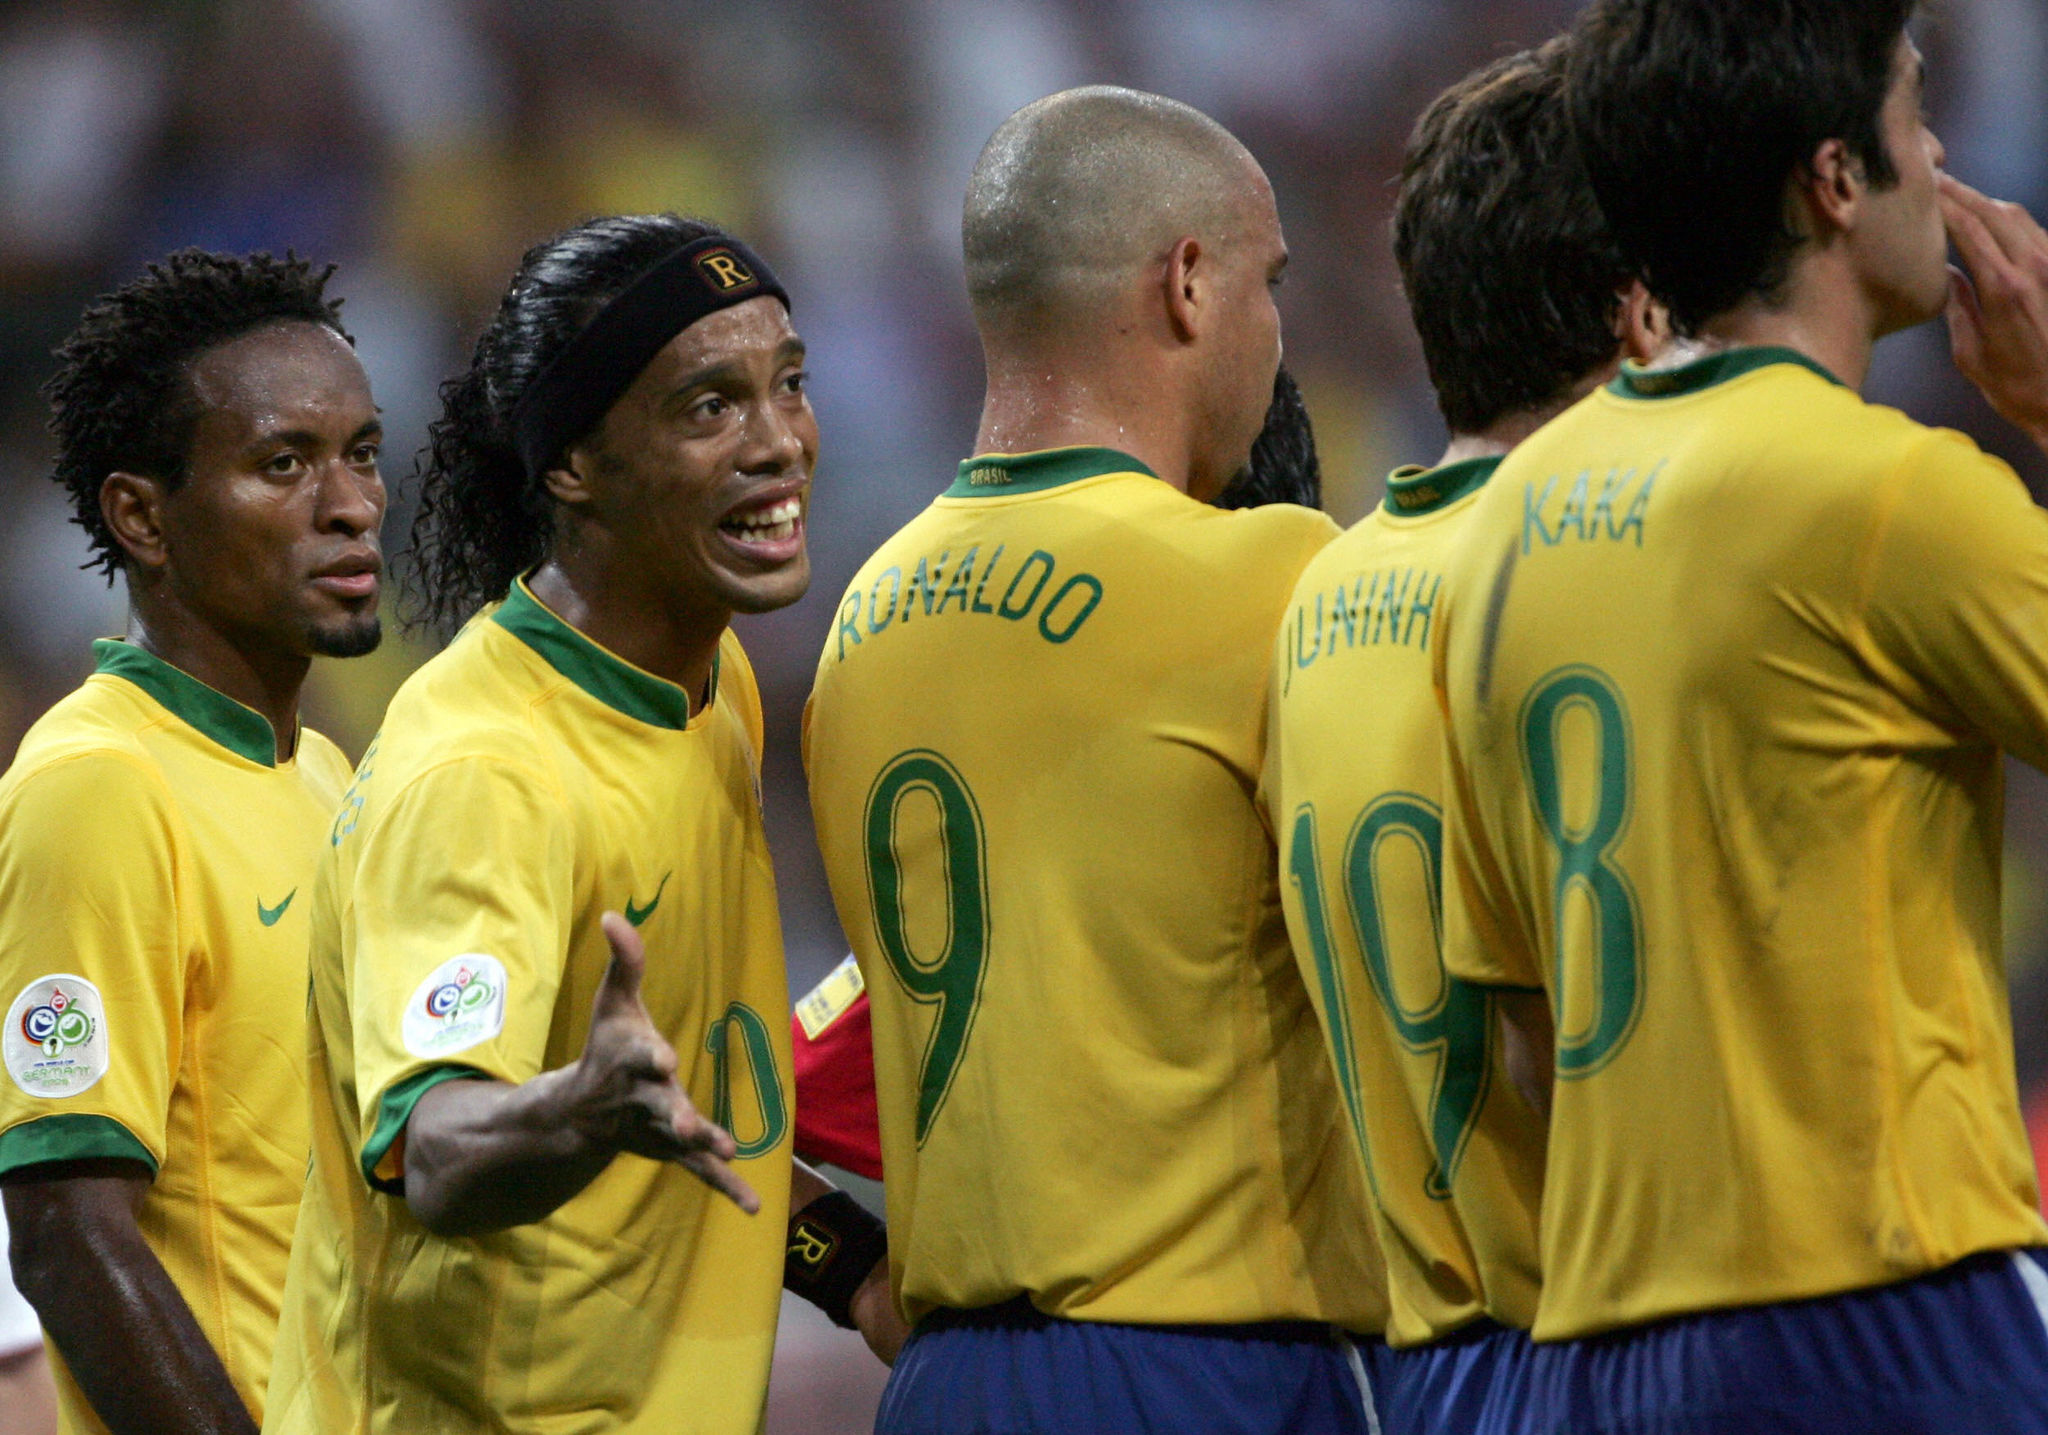 Le meilleur Brésilien de l’histoire après Pelé ? Neymar répond sans hésitation